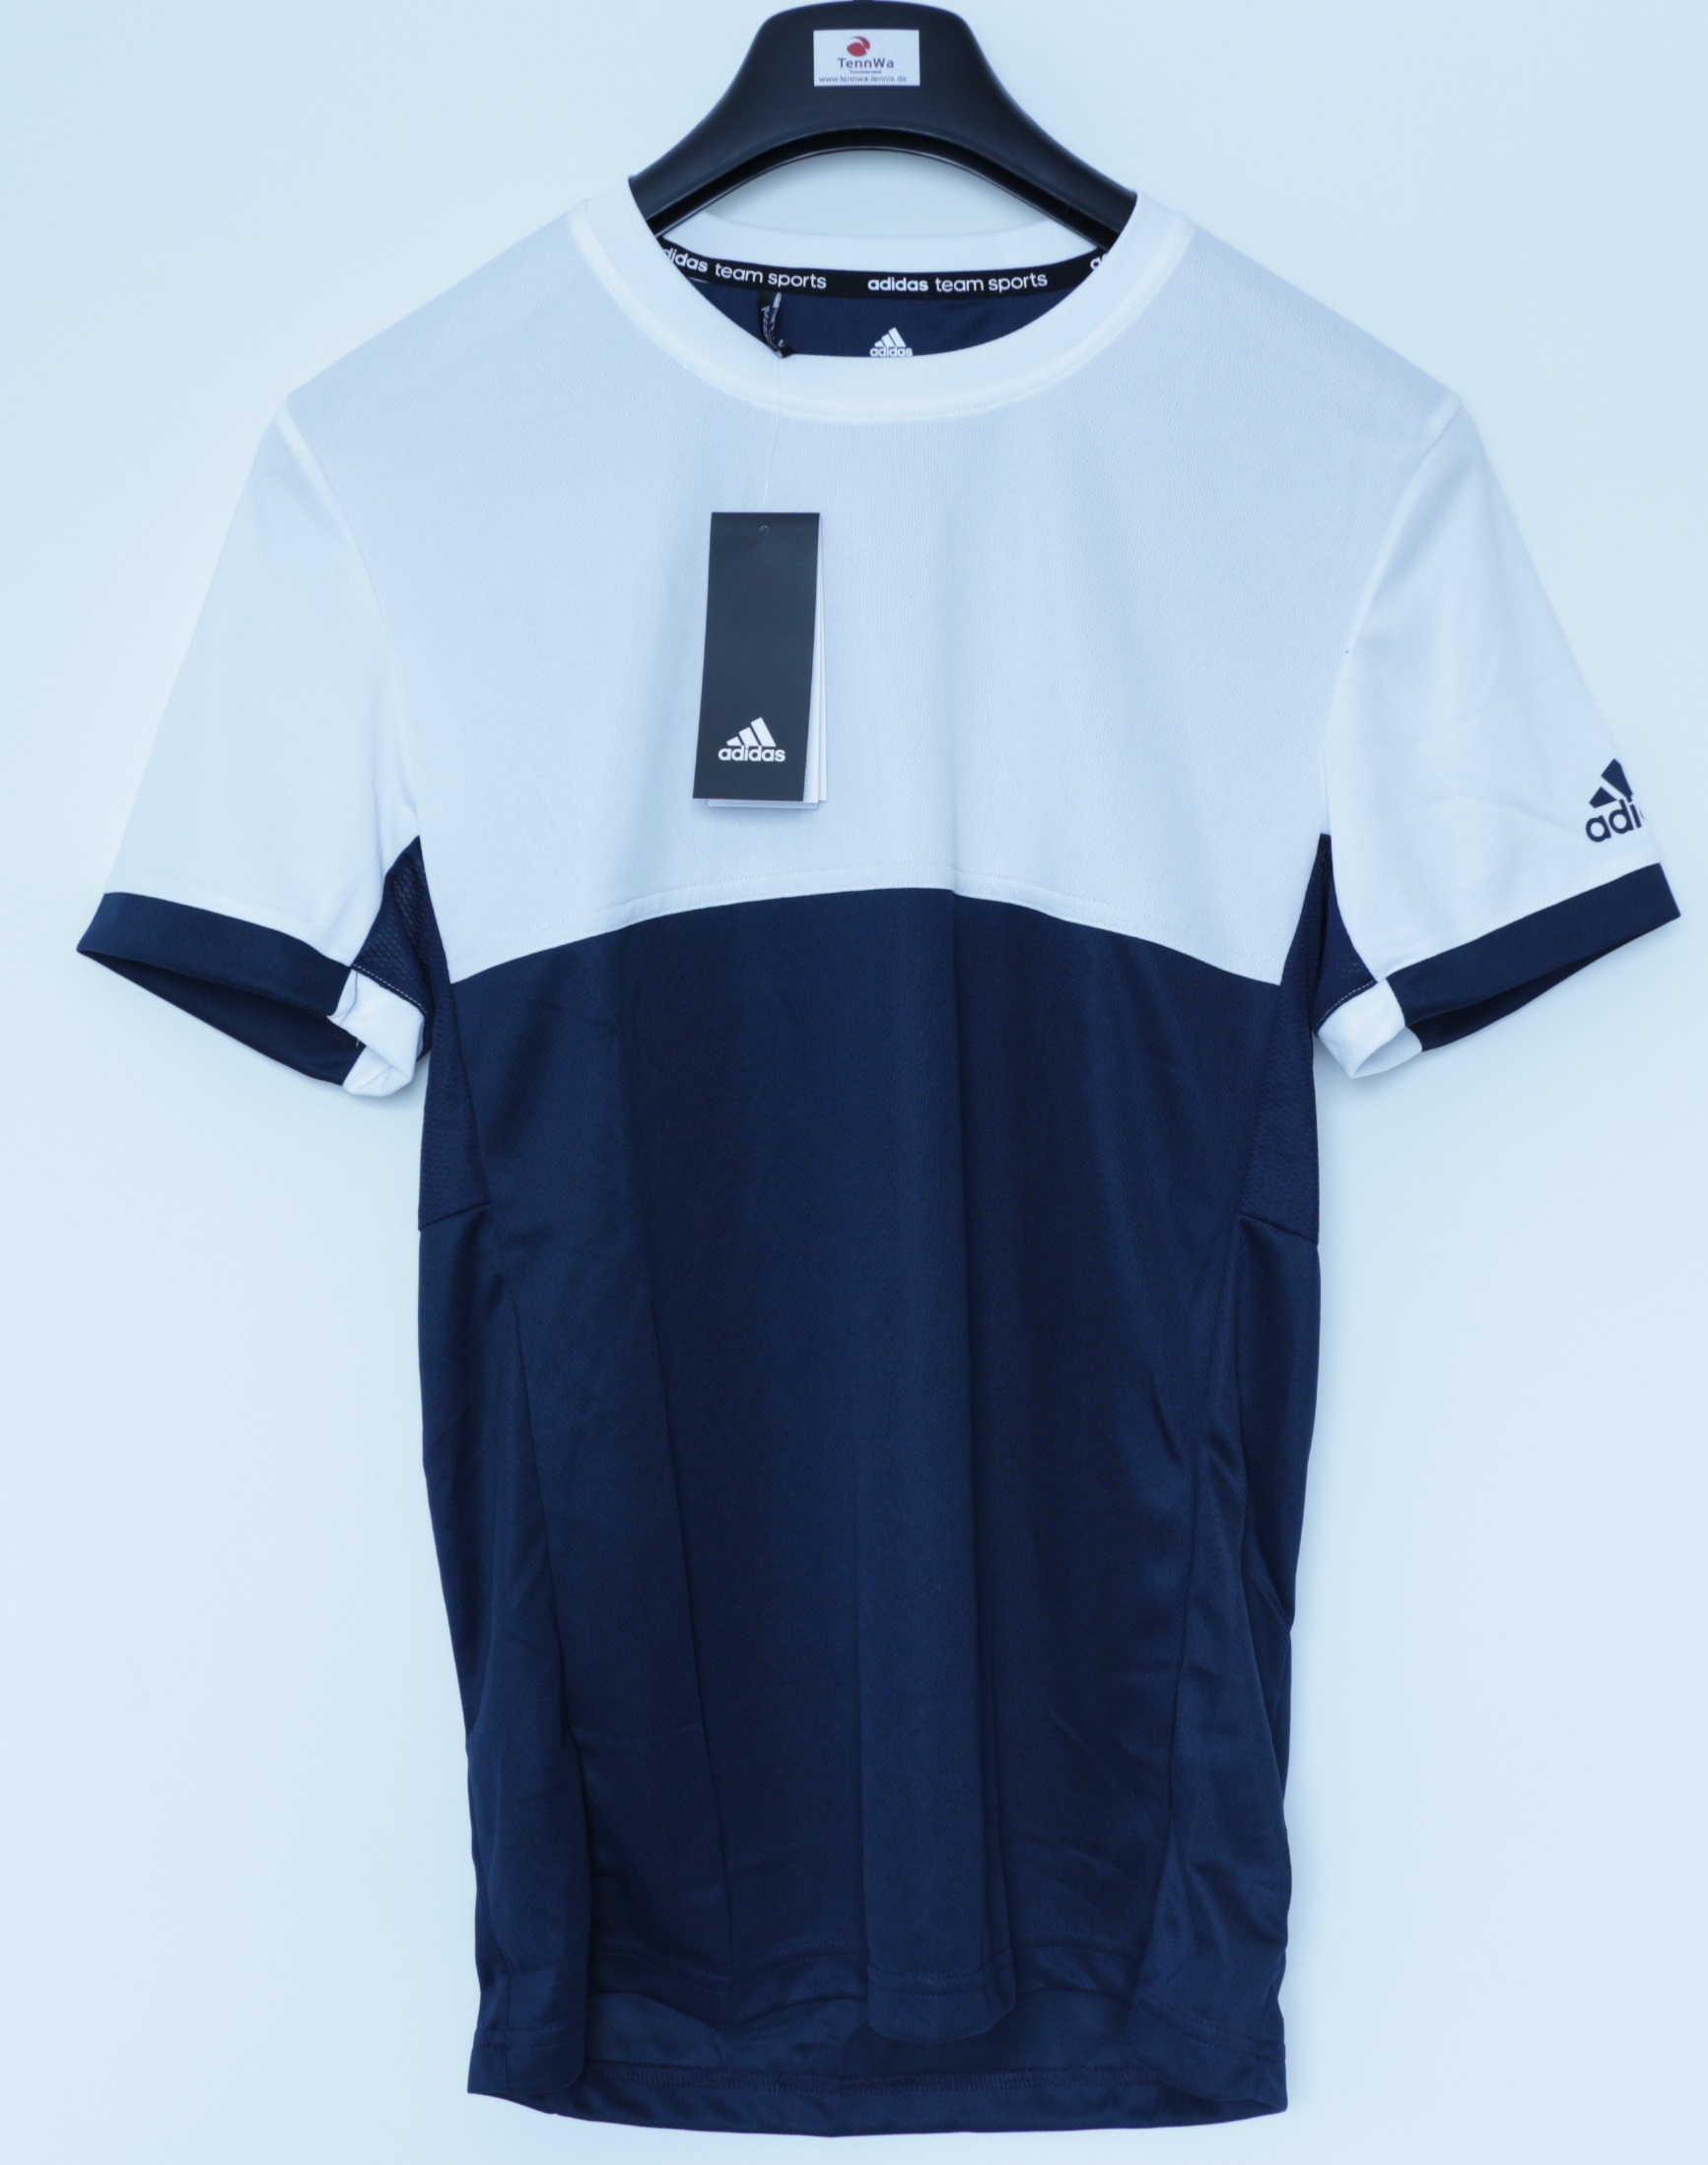 Adidas T16 T-Shirt Herren weiß/blau